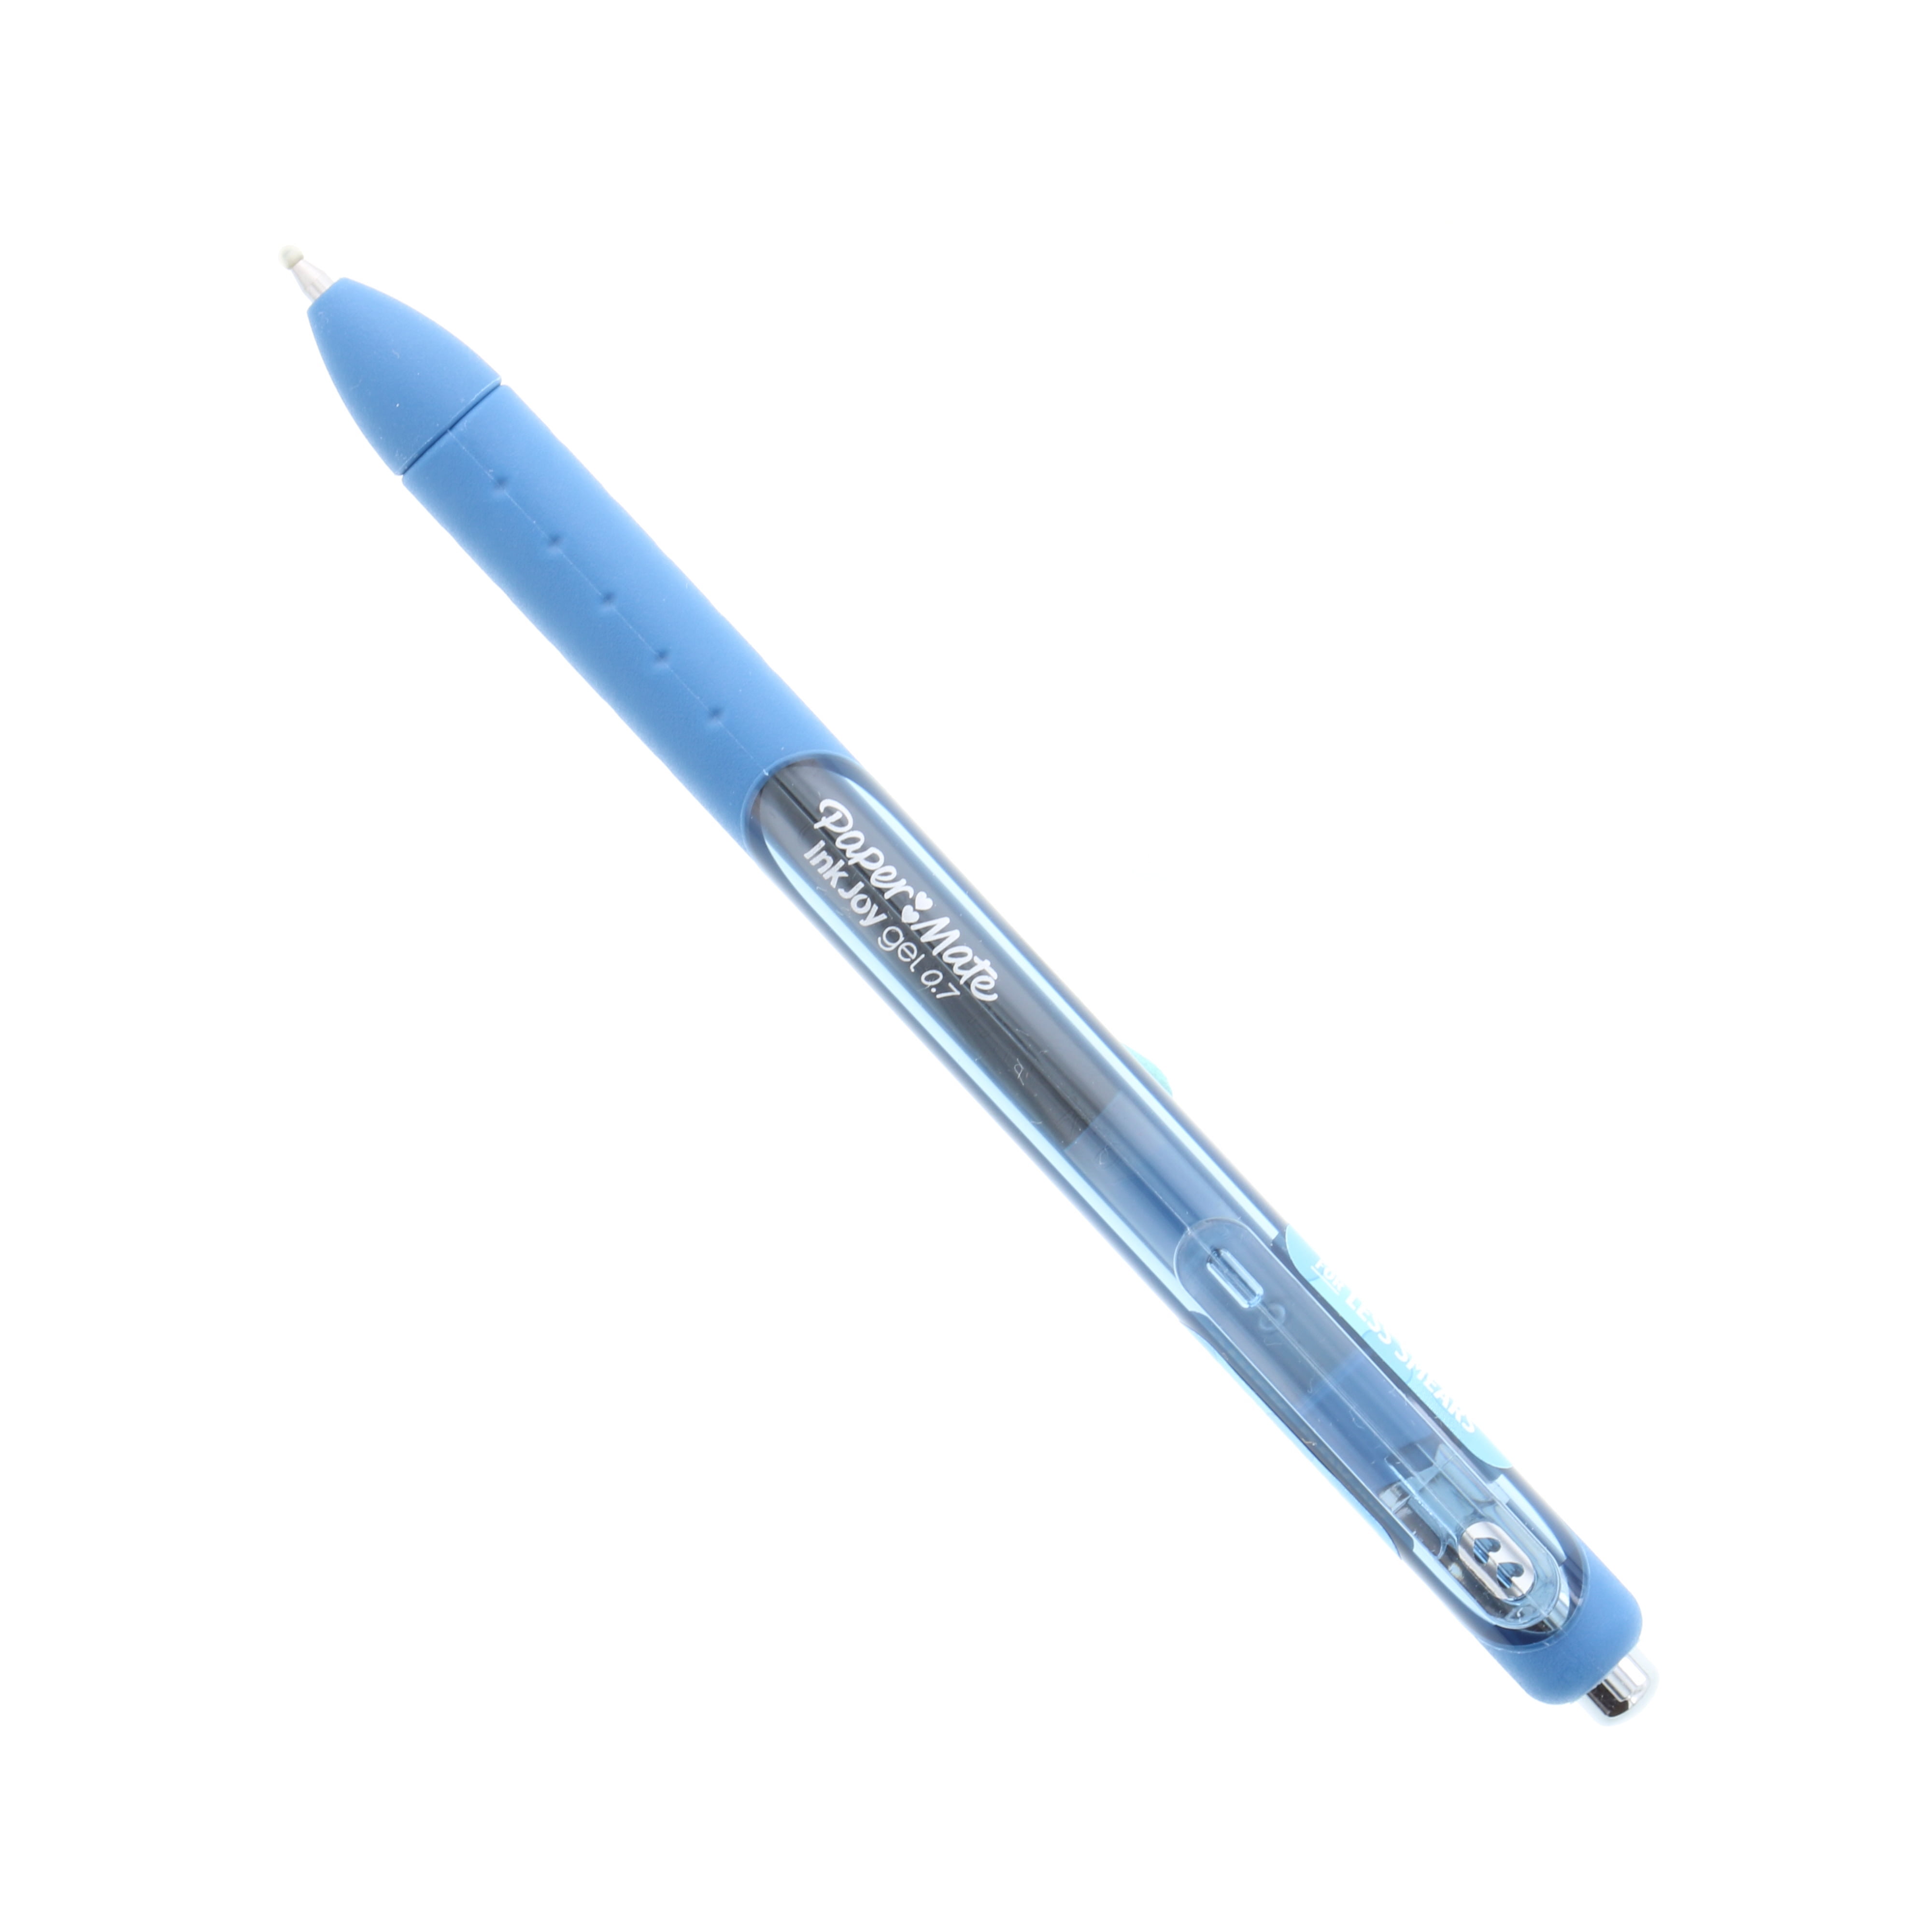 Paper Mate InkJoy Gel Pen 0.7 - Single / Blue